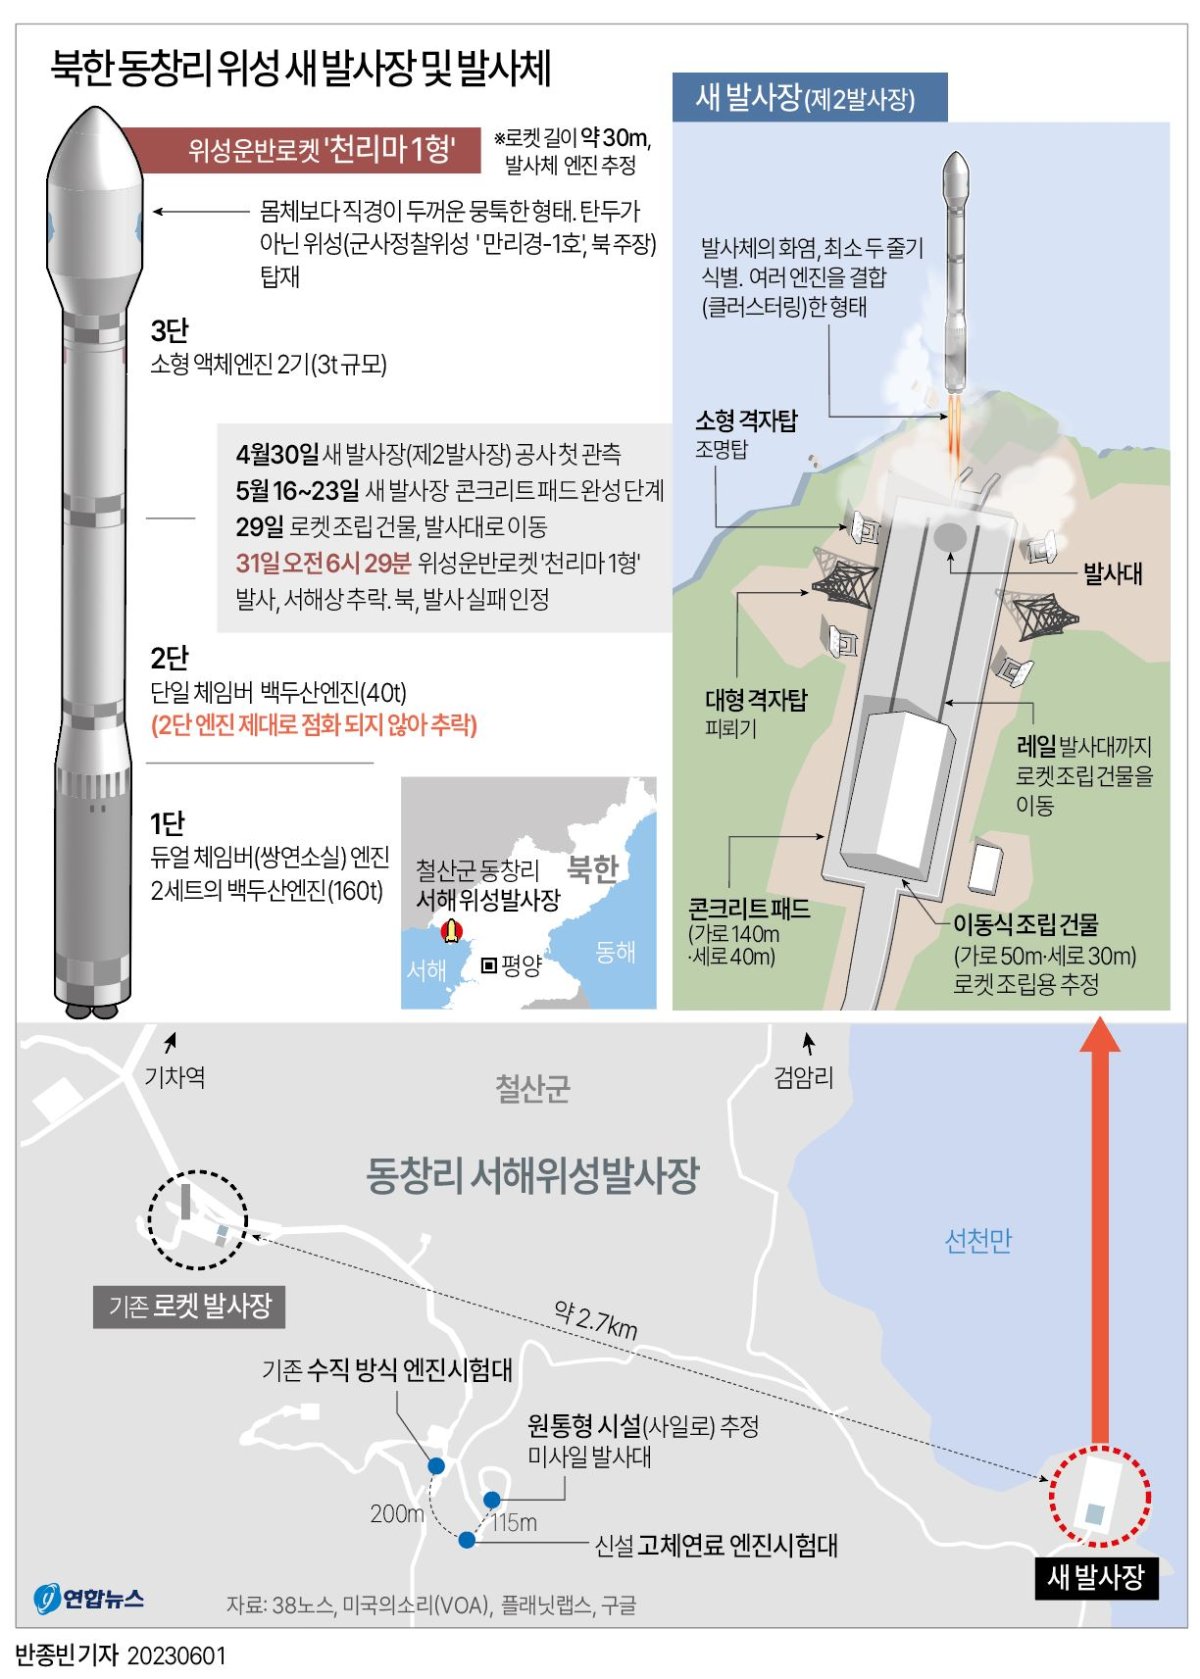  북한 동창리 새 위성발사장 및 발사체